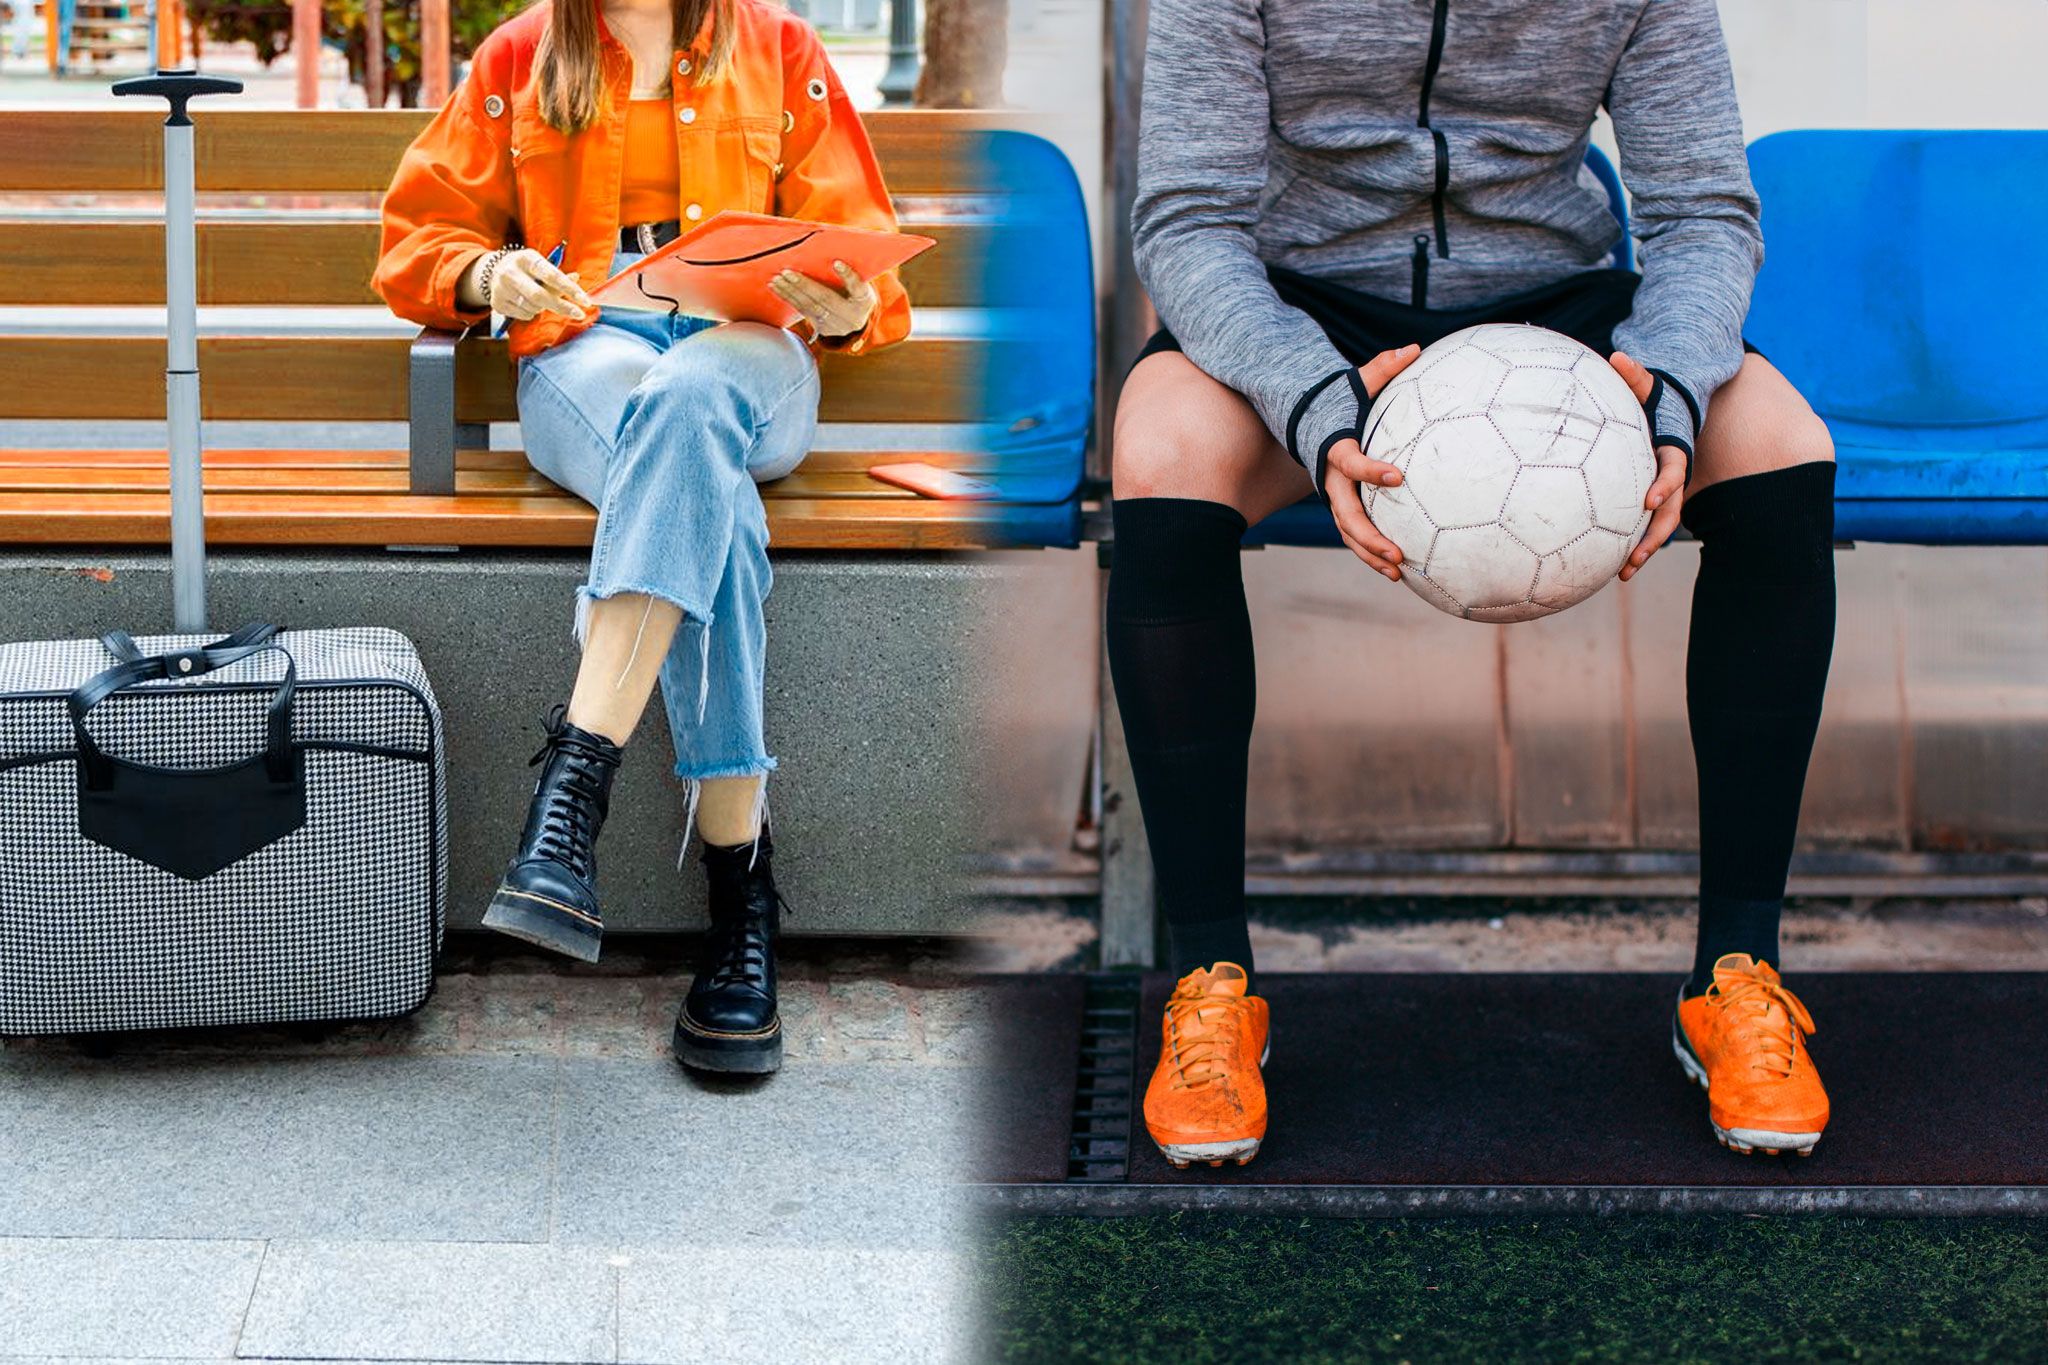 grafika: zdjecie podzielone na 2, po lewej dziewczyna z walizką czeka na pociąg na ławce, po prawej zawodnik piłki nożnej z piłką siedzi na ławce